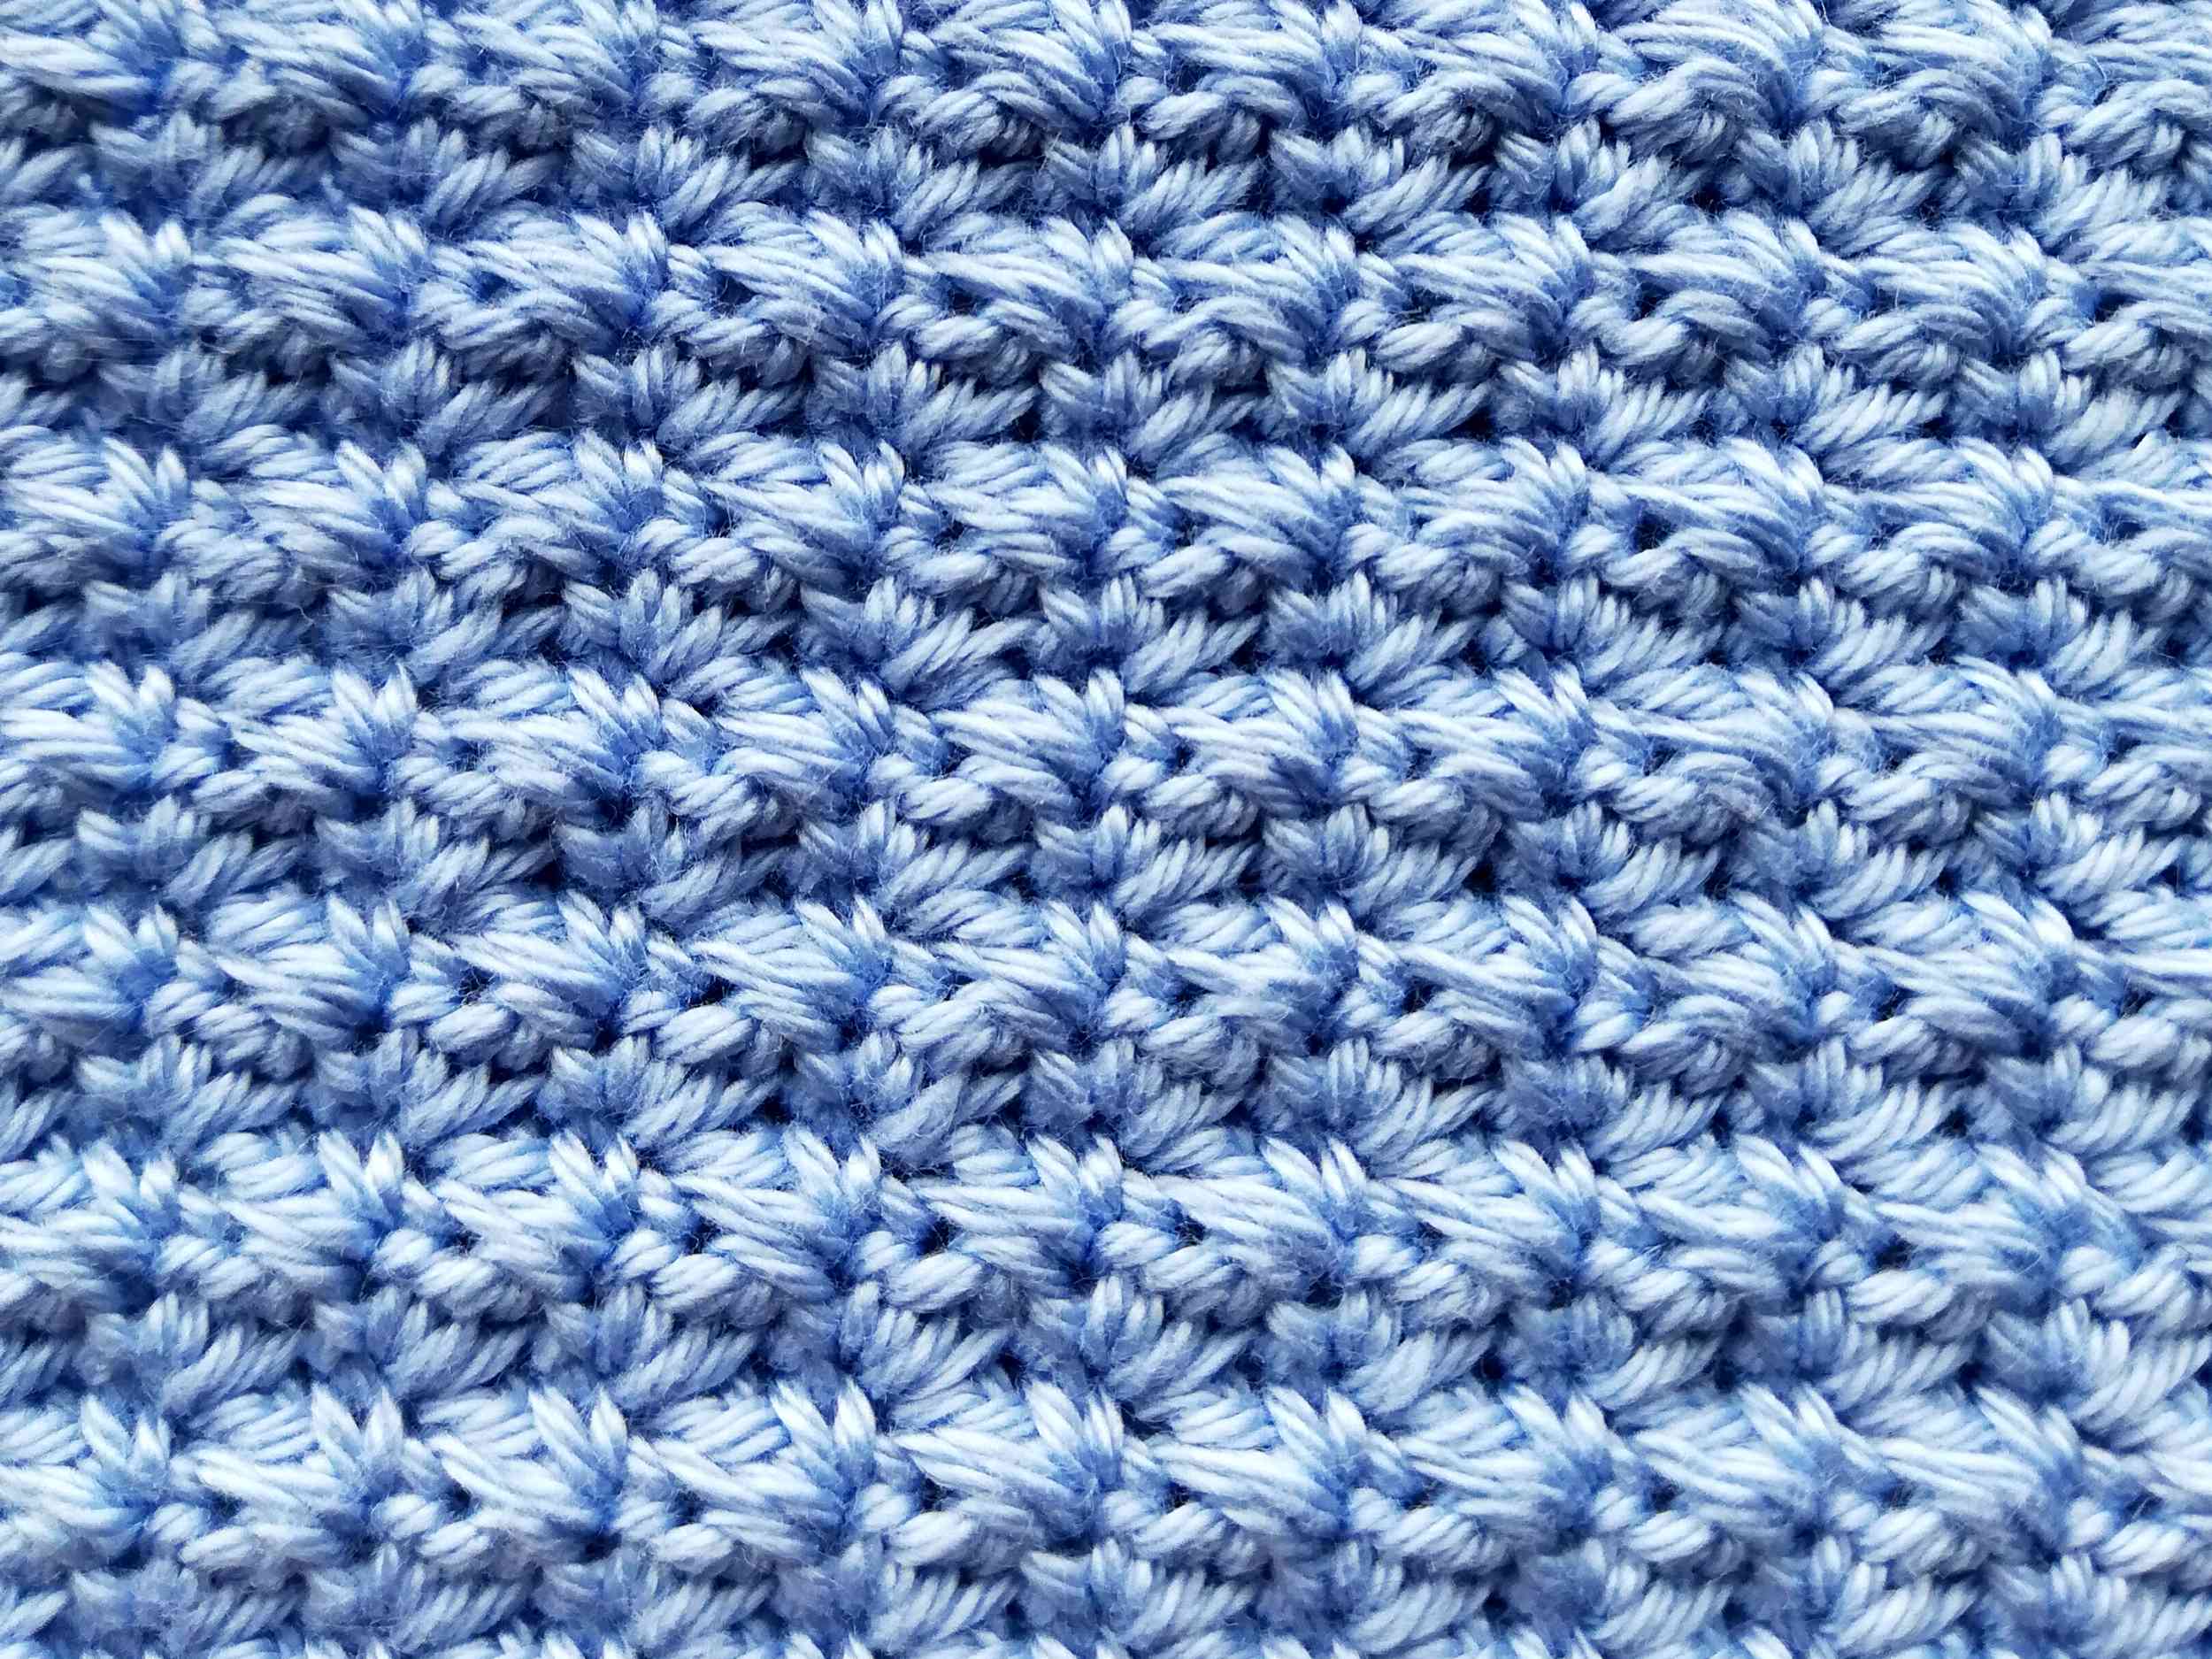 Crochet zipper pouch Suzette - Nordic Hook - Free crochet pattern